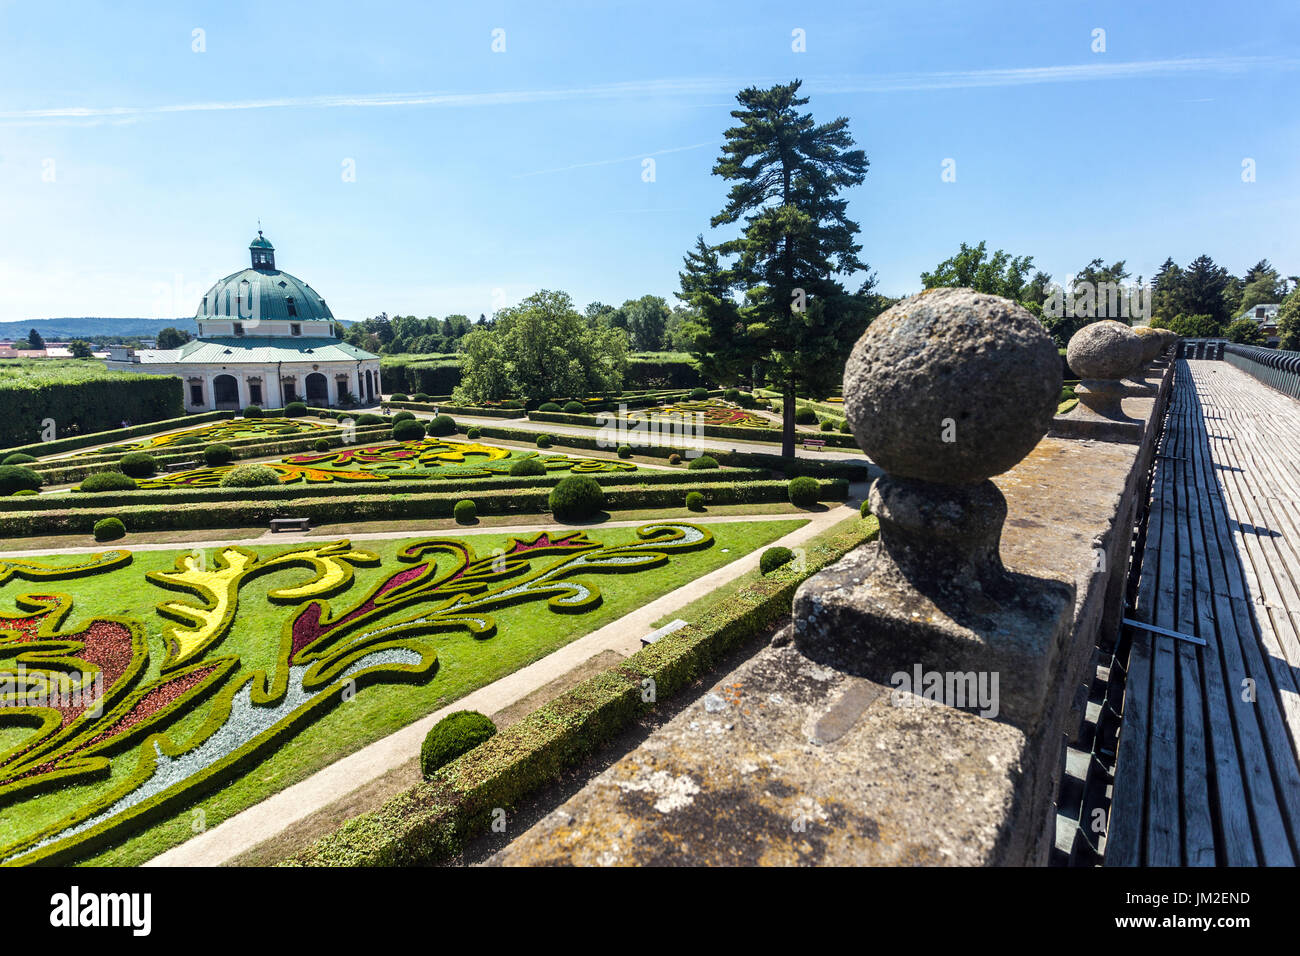 Jardin Kromeriz, vue de la loggia d'arcade, jardin d'agrément Kvetna Zahrada jardin UNESCO Kromeriz, Moravie, République tchèque jardin ornemental Banque D'Images